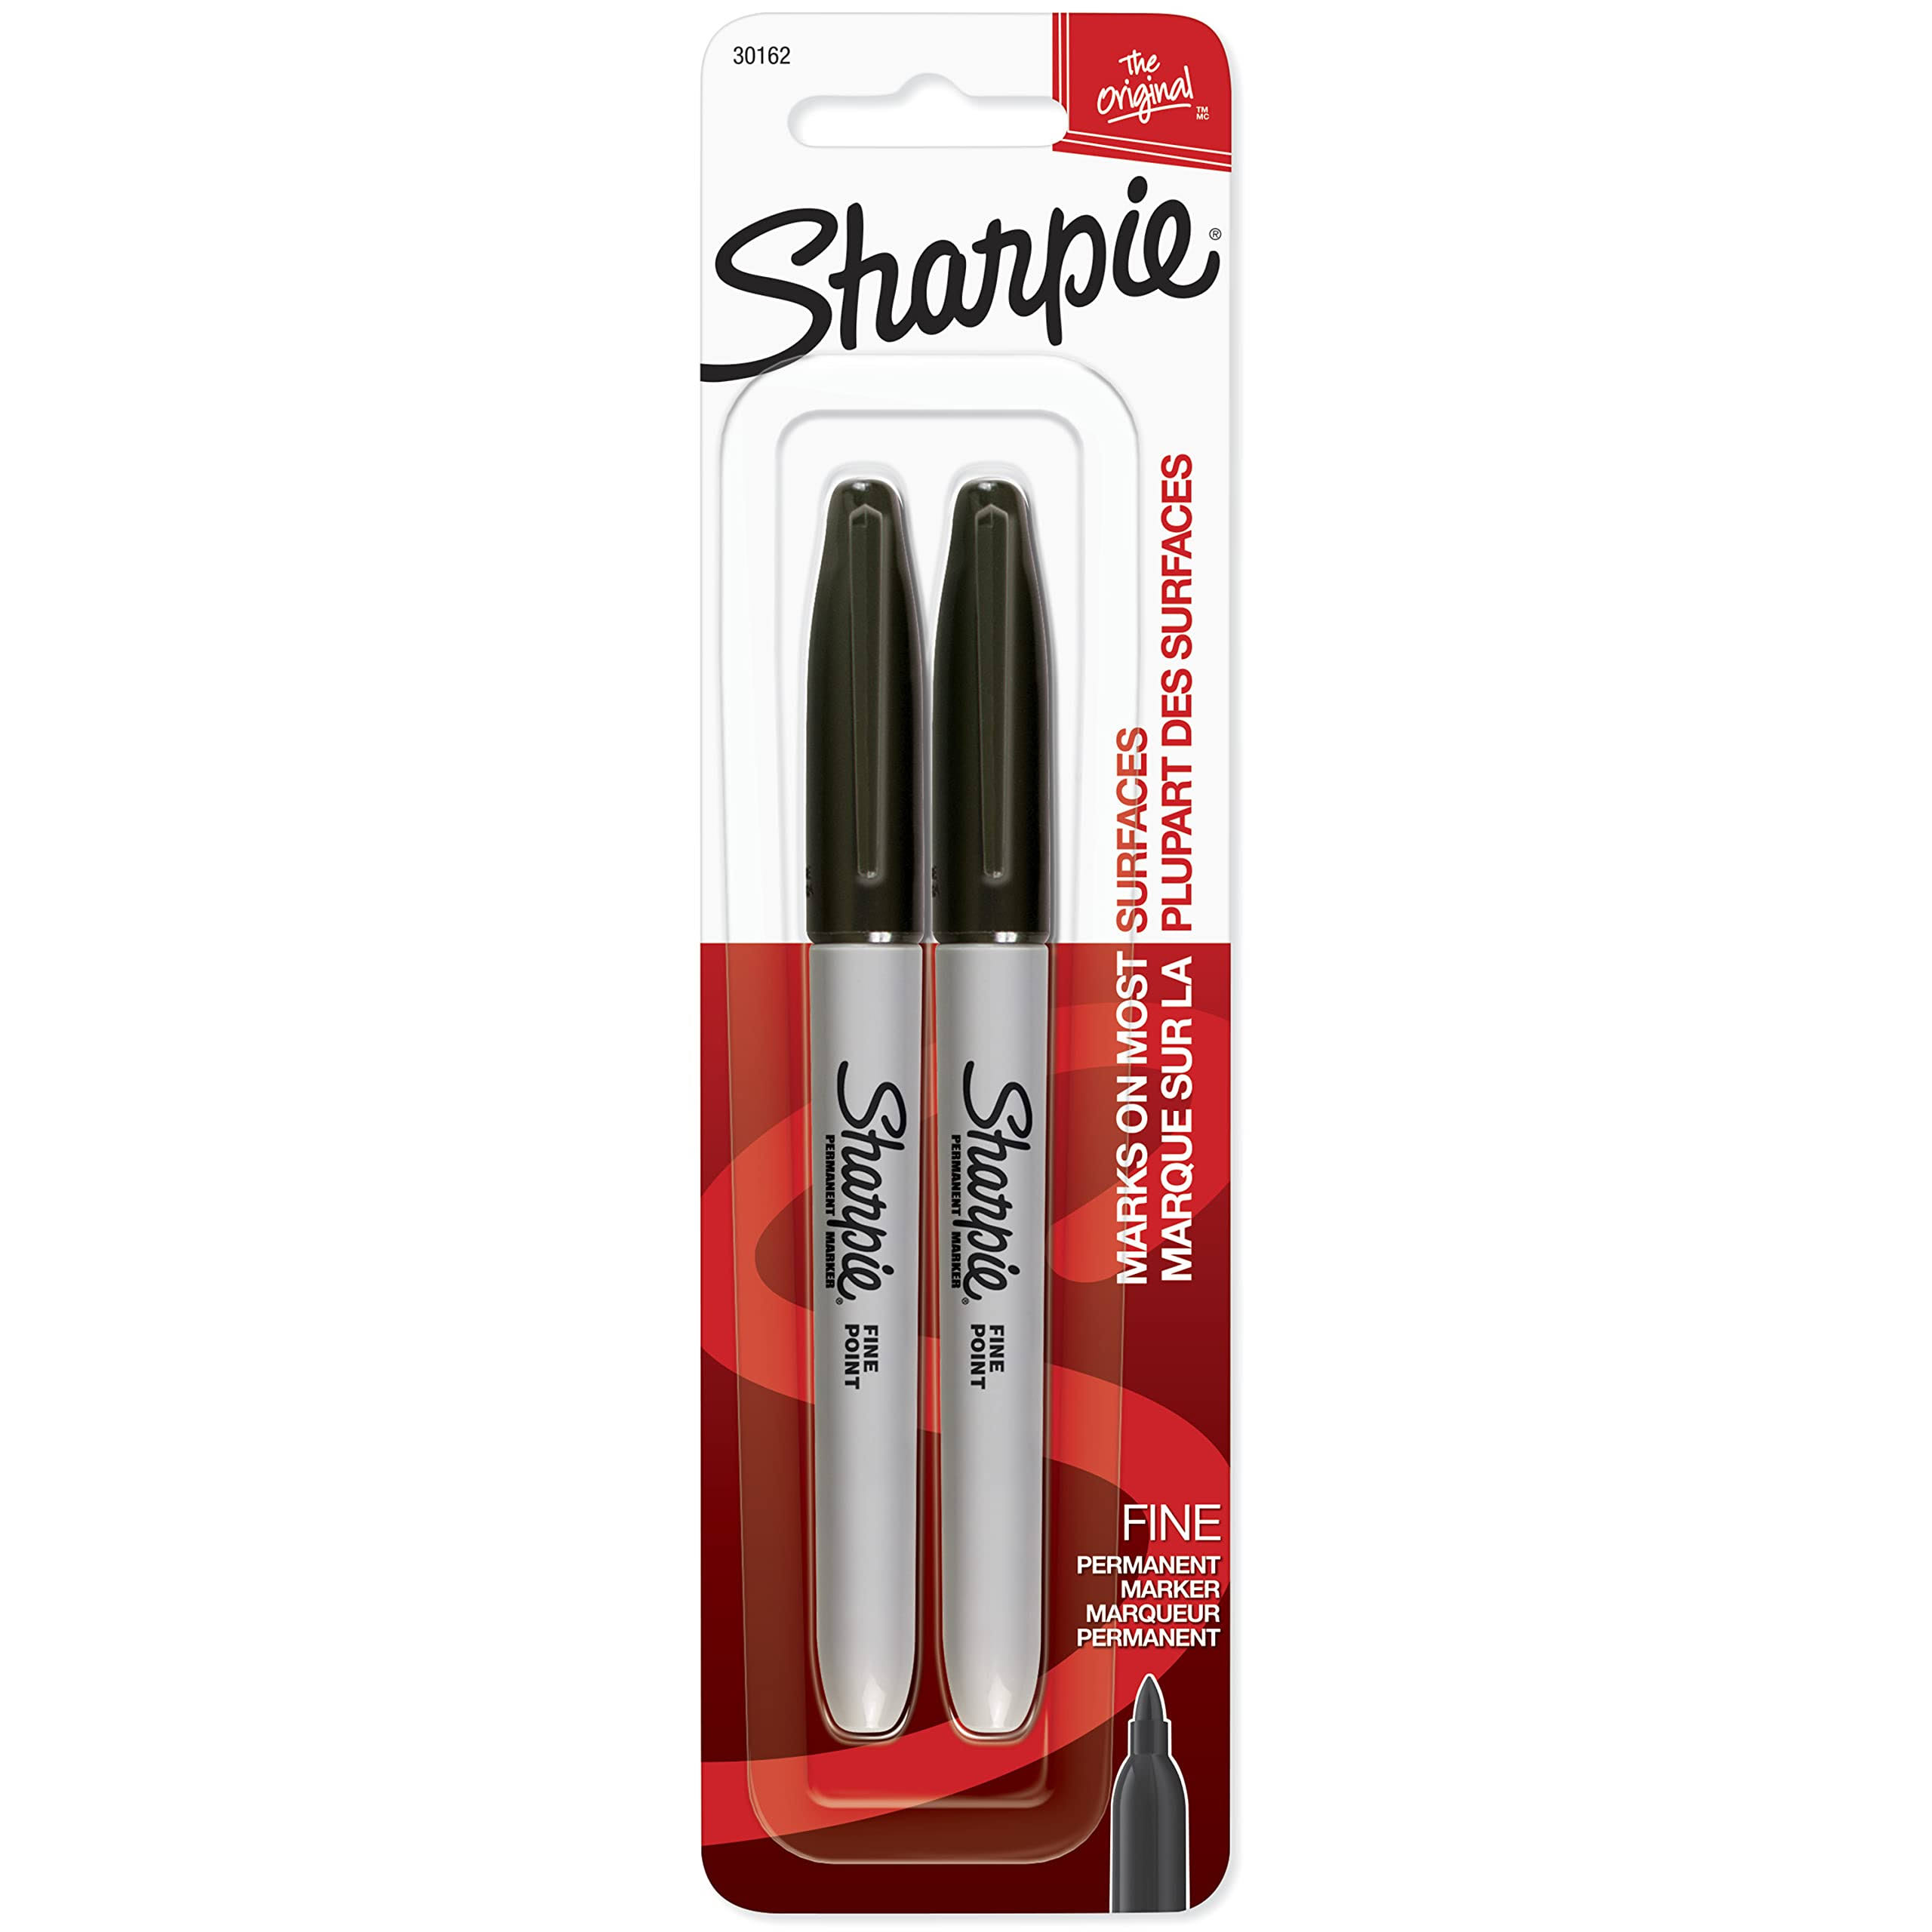 Sharpie Permanent Marker - Black, Fine Point, Black